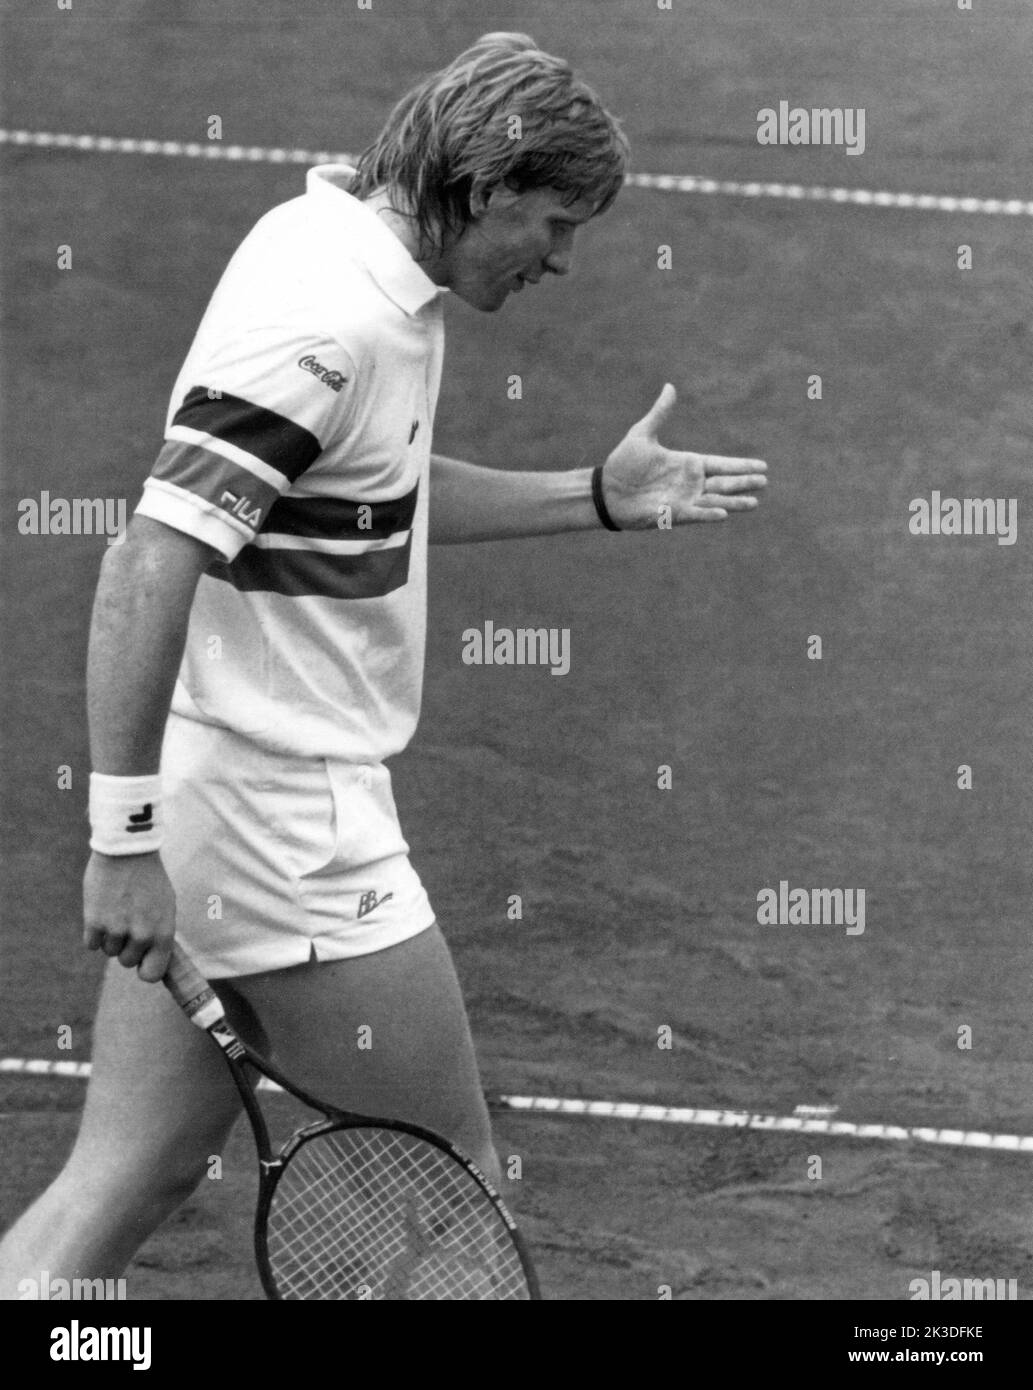 Tennisspieler Boris Becker ärgert sich in einem Spiel, Ende 1980er Jahre - Fotobuch Band 1 von 2012: Promi- Porträts fotografiert von Hartwig 'Valdi' Valdmanis Stockfoto